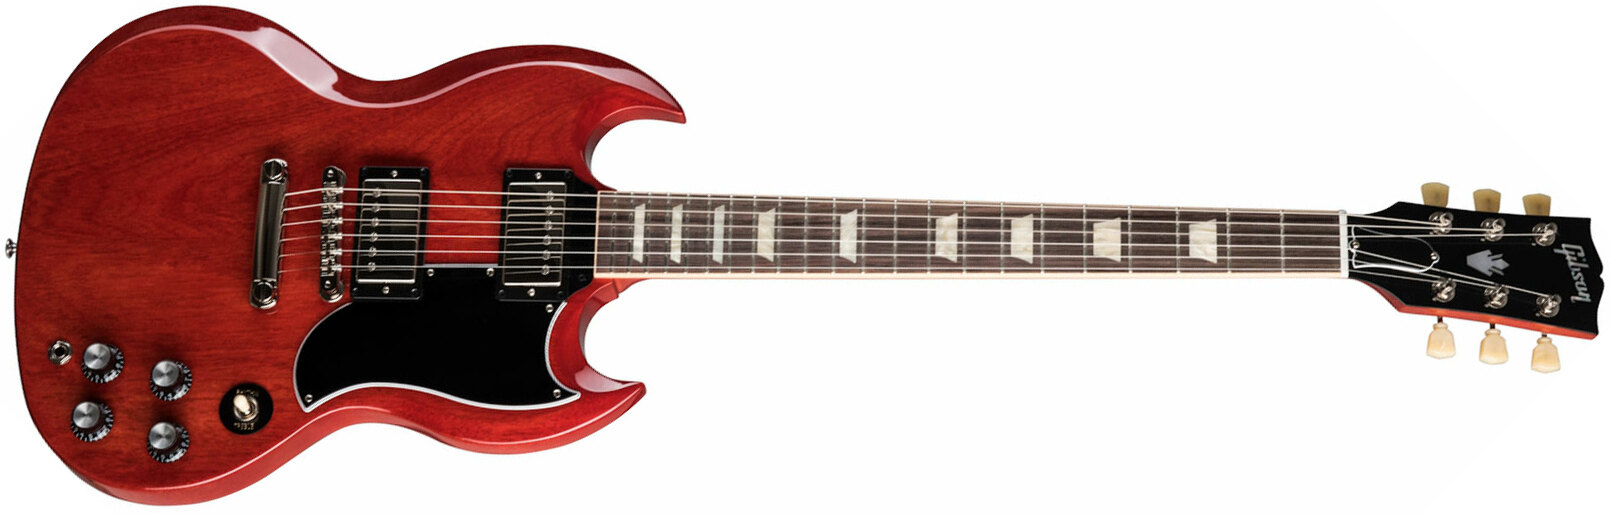 Gibson Sg Standard '61 2h Ht Rw - Vintage Cherry - Retro-rock elektrische gitaar - Main picture